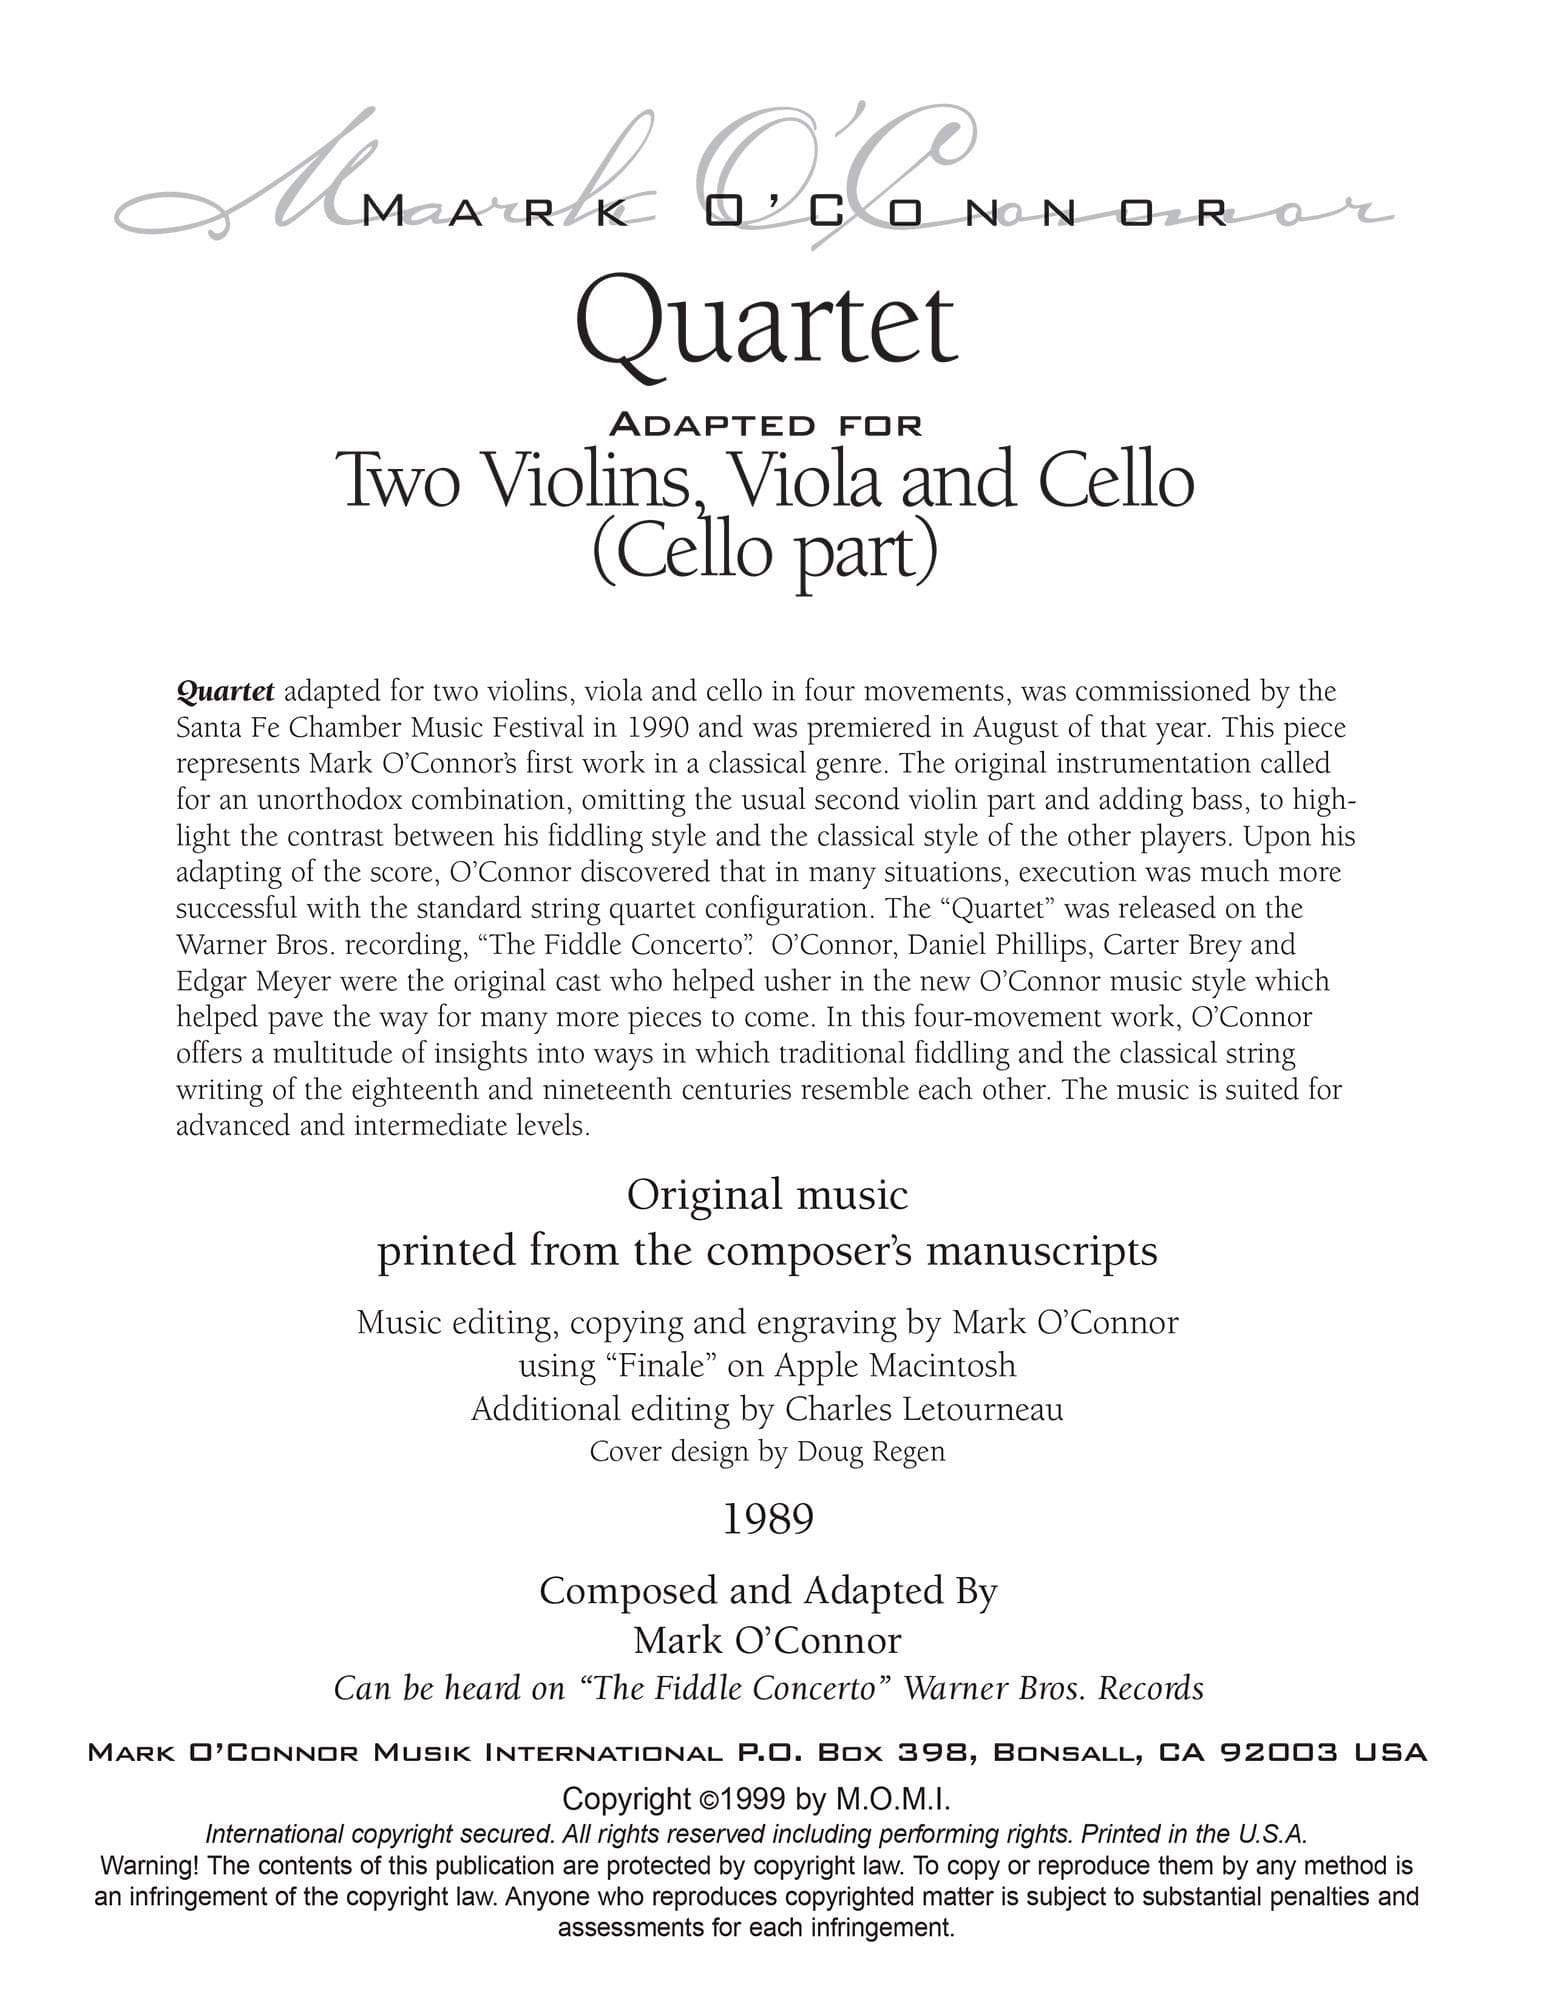 O'Connor, Mark - Quartet for 2 Violins, Viola, and Cello - Cello - Digital Download